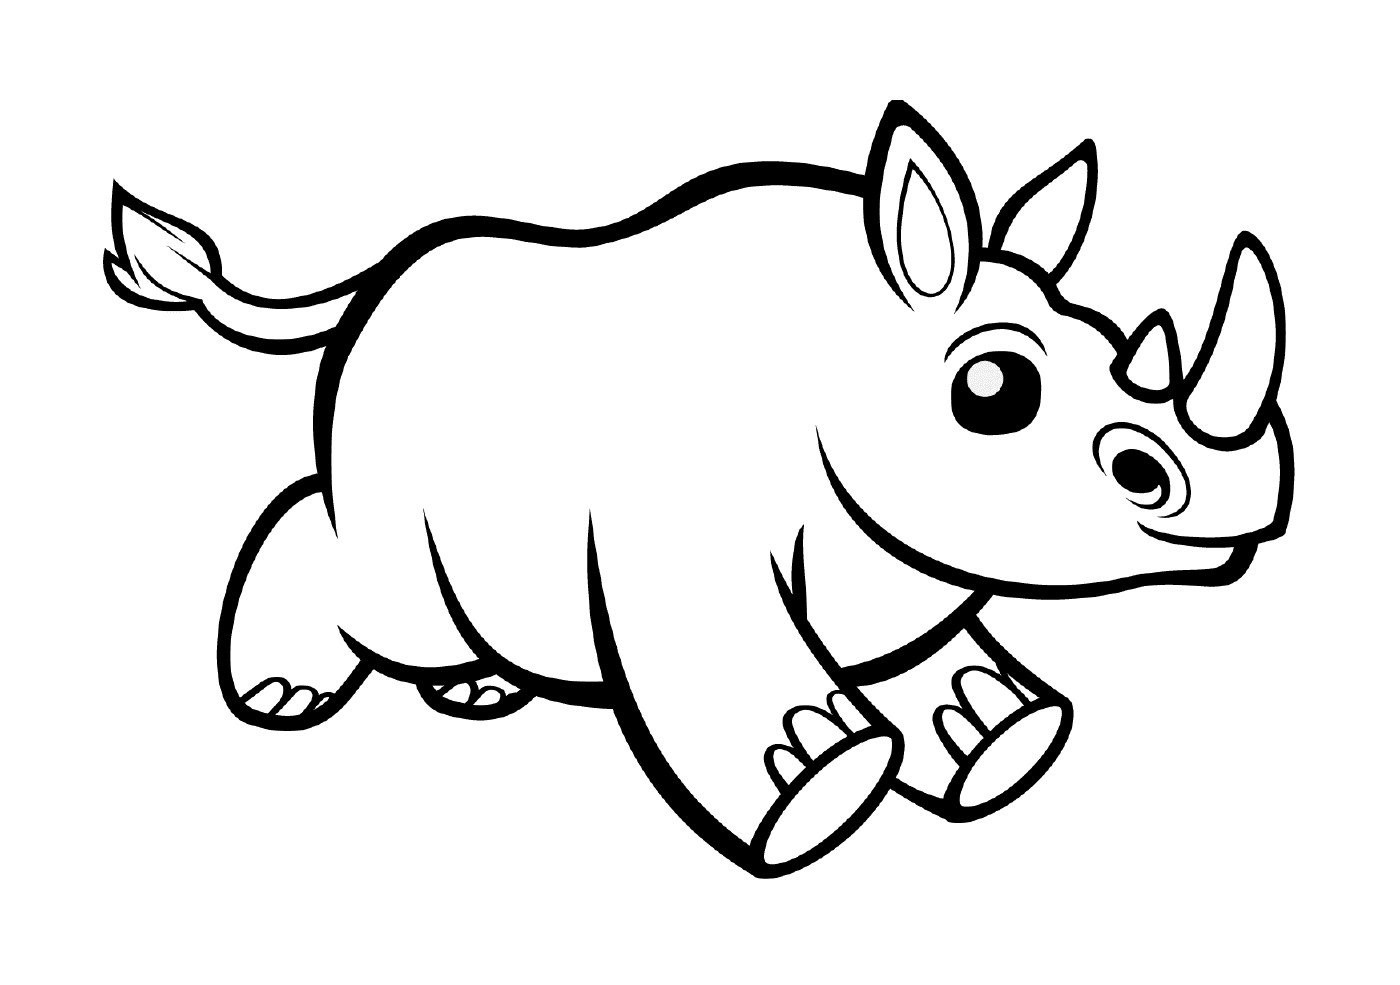  Um animal parecido com um rinoceronte 